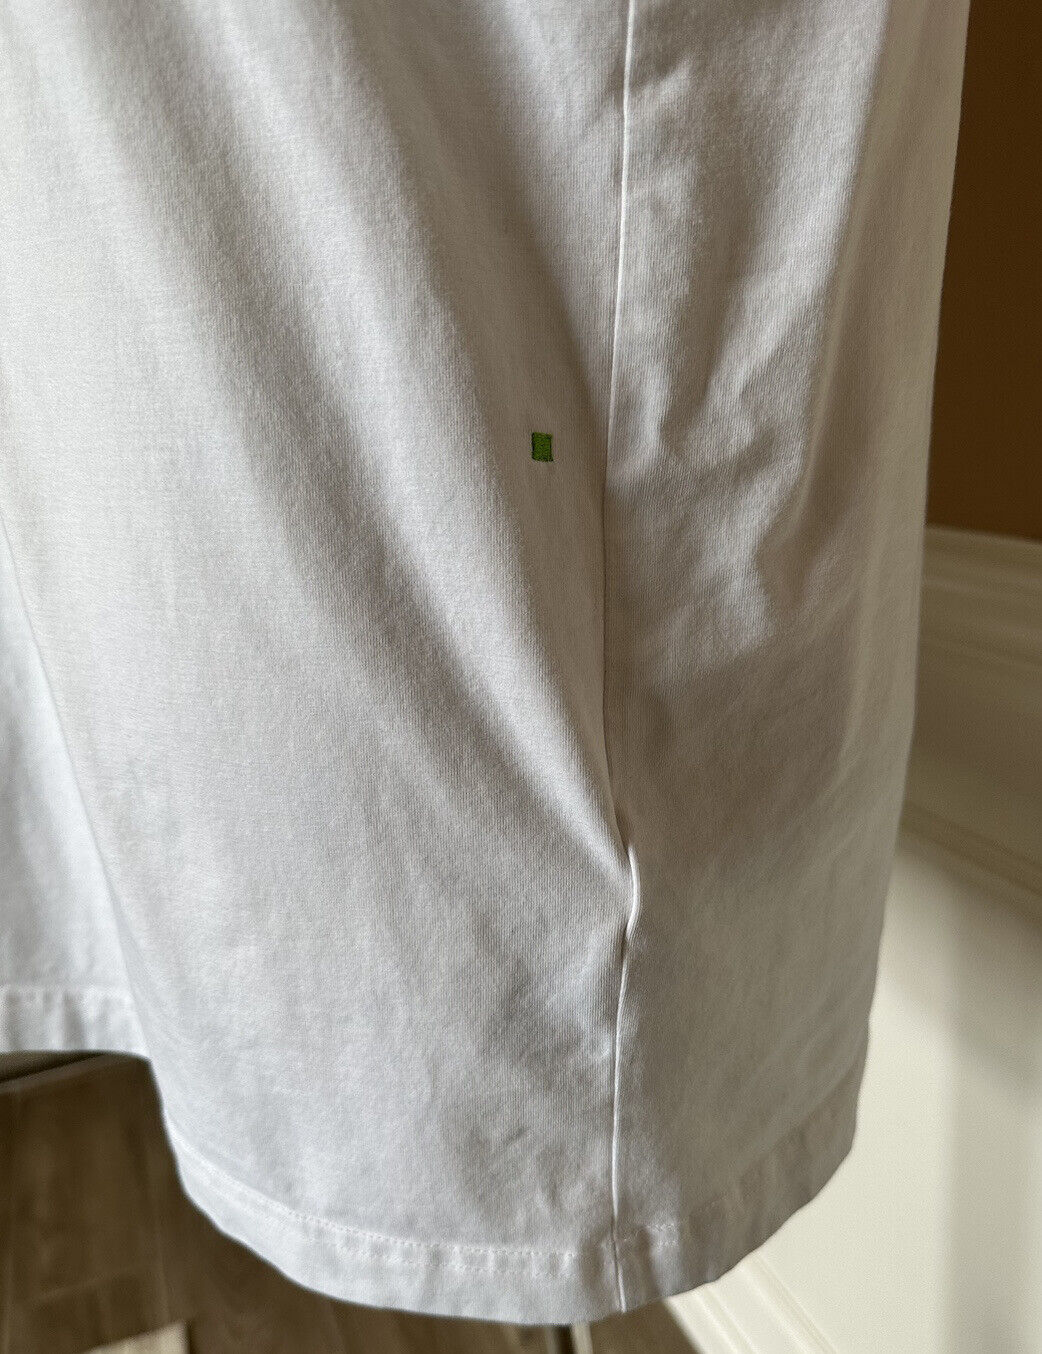 Boss Hugo Boss Green Label Logo Short Sleeve White T-Shirt L (Fits like Medium)